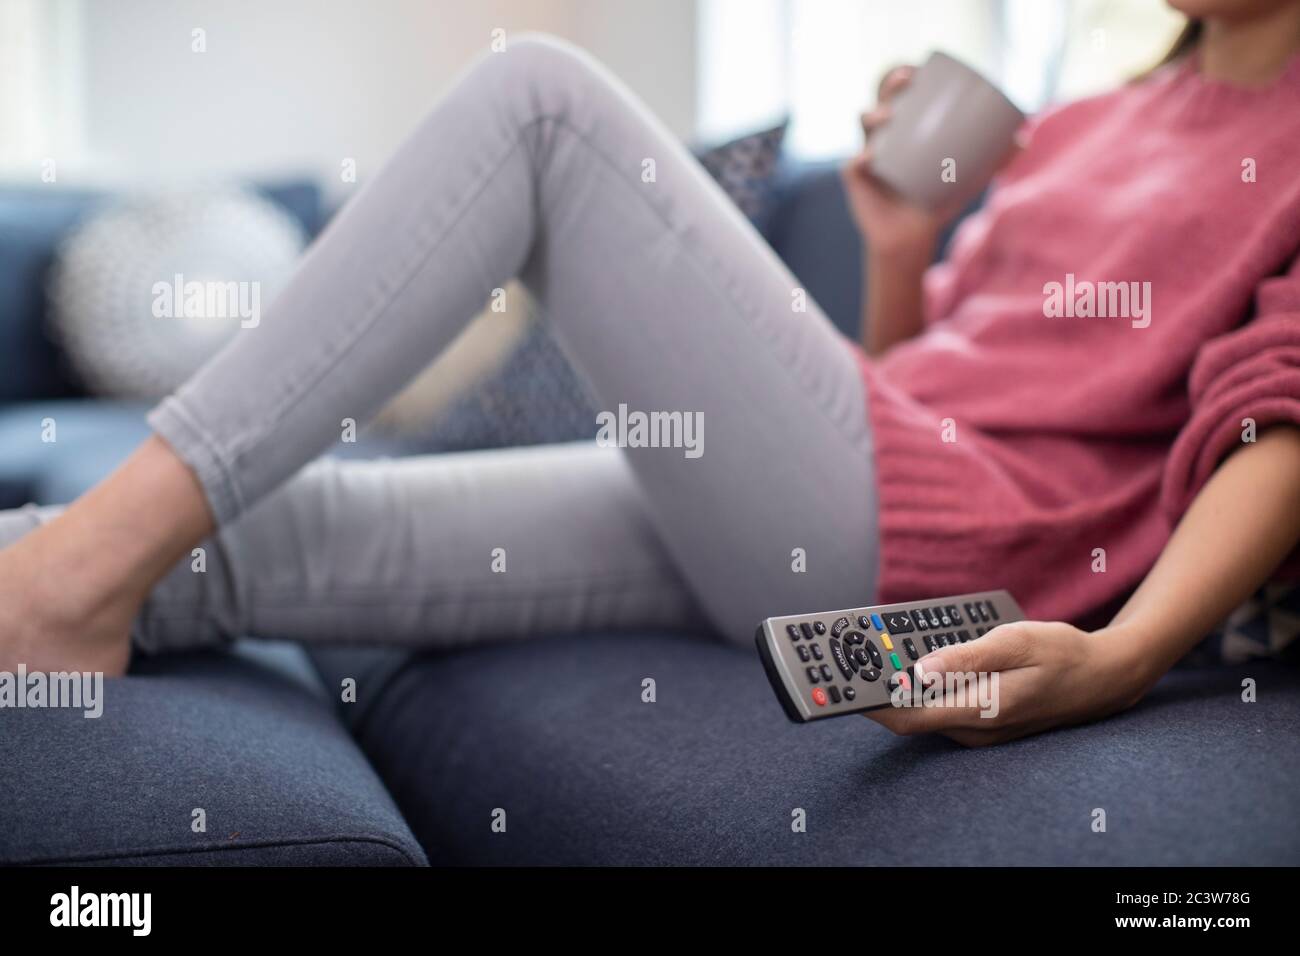 Dettaglio della donna rilassante sul divano tenendo premuto il telecomando e guardare la televisione Foto Stock